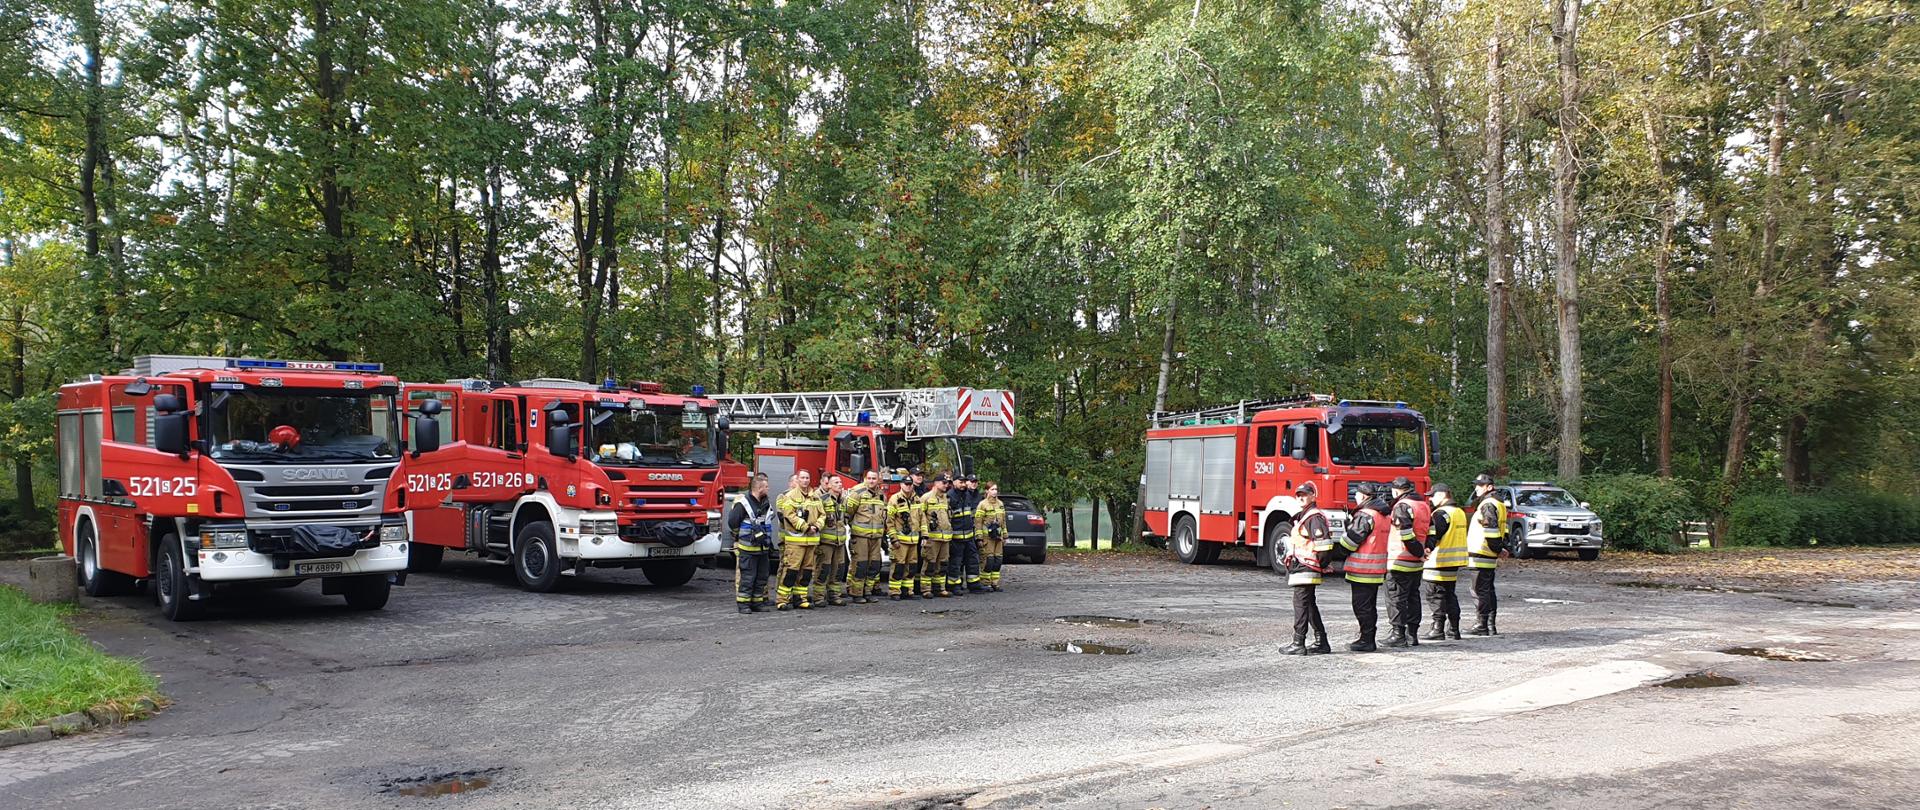 Zdjęcie przedstawia samochody ratowniczo - gaśnicze oraz strażaków stojących na parkingu w otoczeniu drzew, przygotowanych do ćwiczeń. 